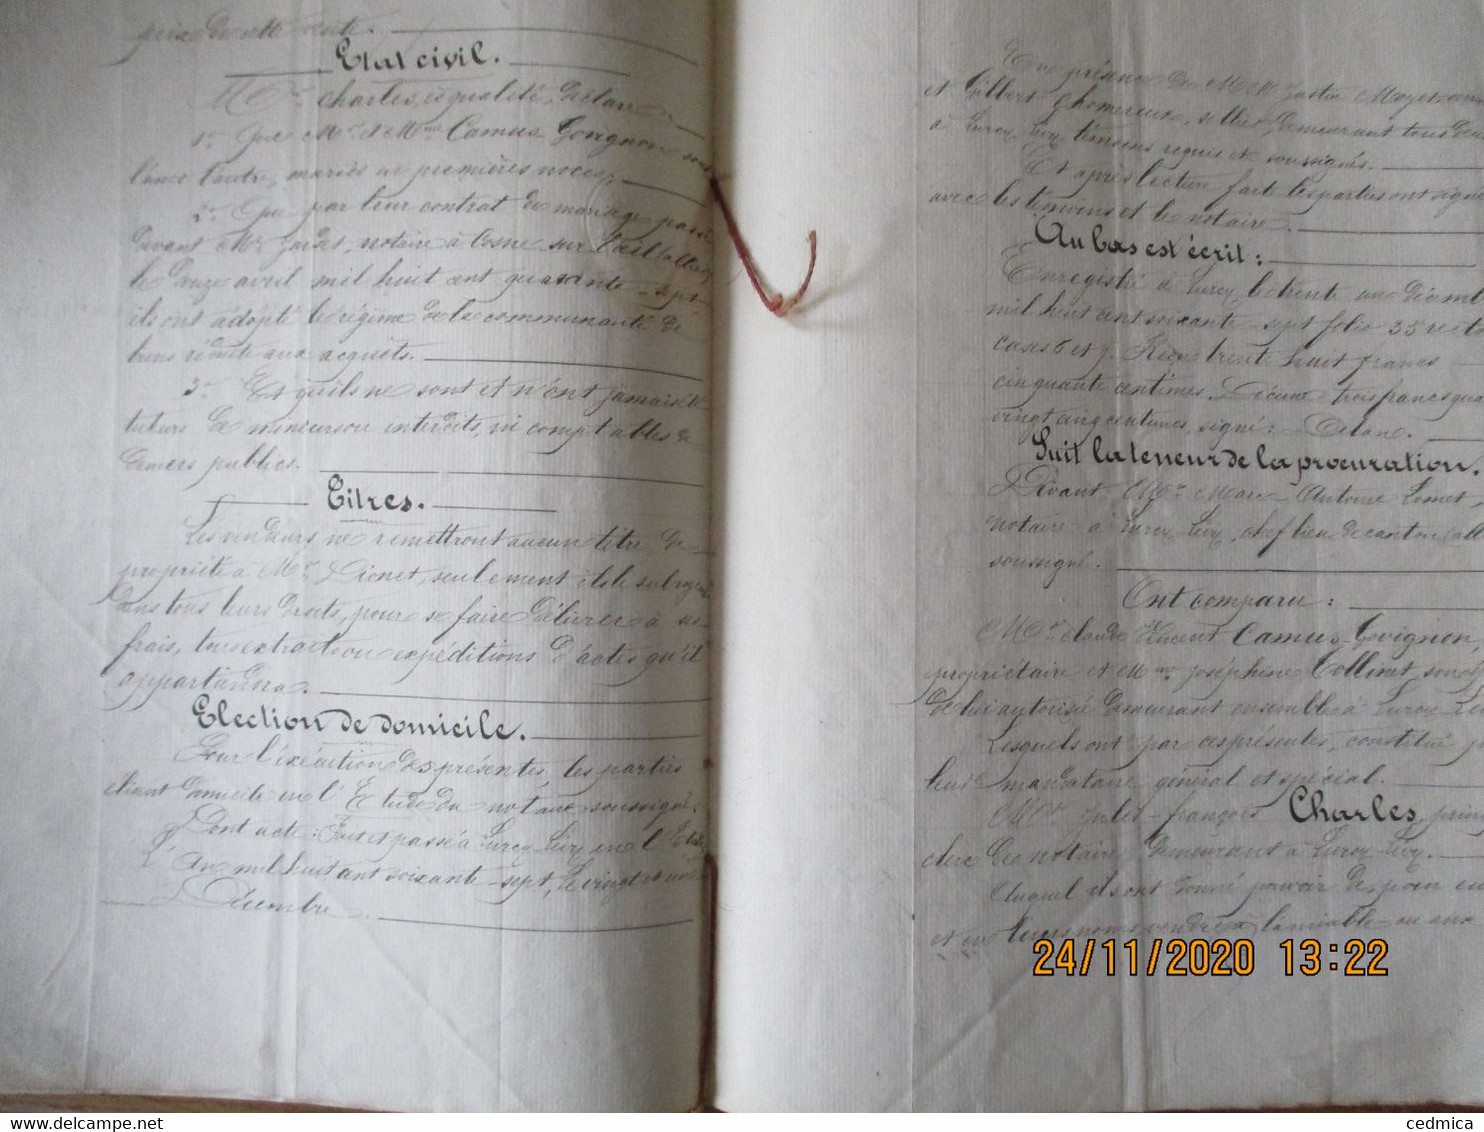 LURCY LEVY LE 8 JUILLET 1867 VENTE PAR CLAUDE CAMUS-GOVIGNON A M.PIERRE DIONET DE PRE SOUS LE NOM DE PRE DES OEILLETS - Manuscripts